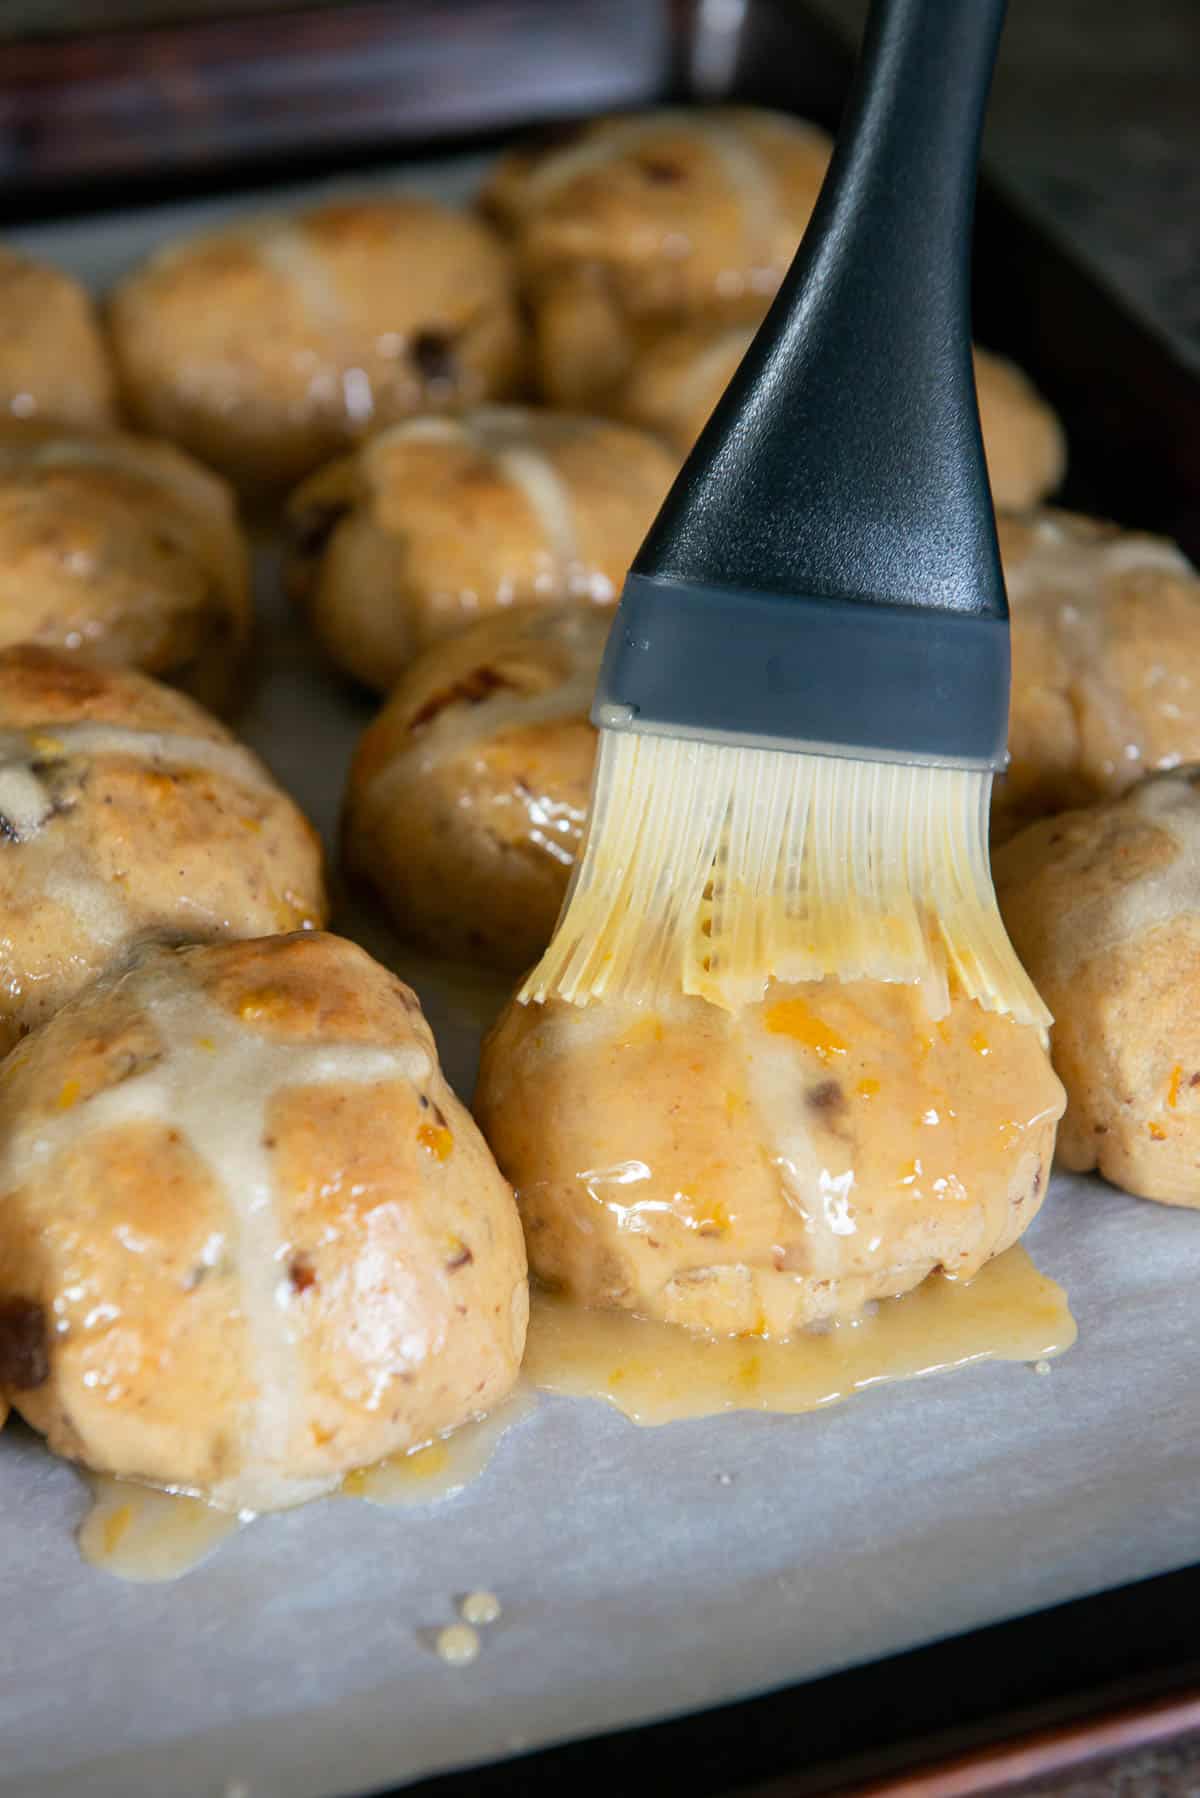 brushing orange glaze on warm hot cross buns.